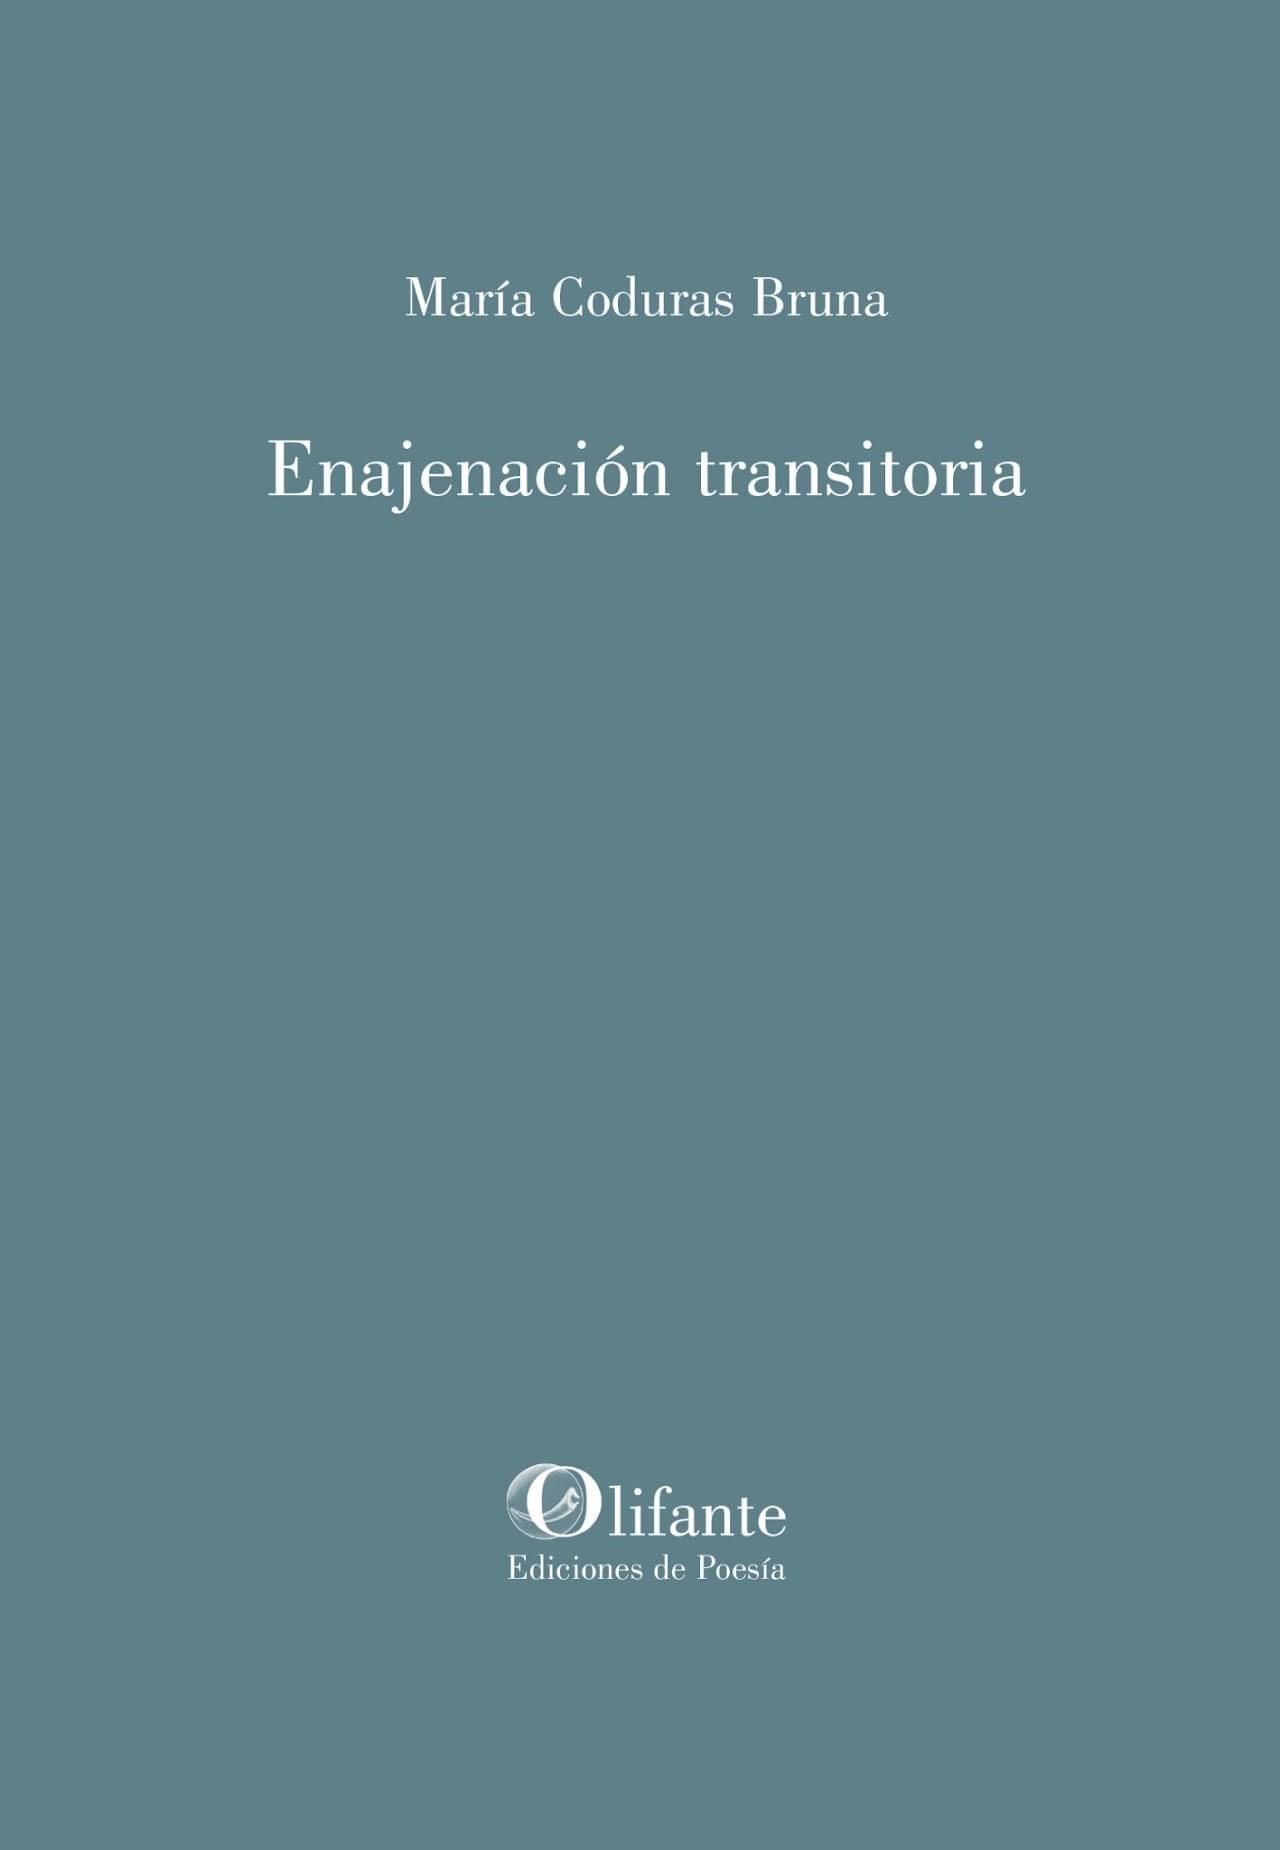 María Coduras Bruna presenta "Enajenación transitoria"